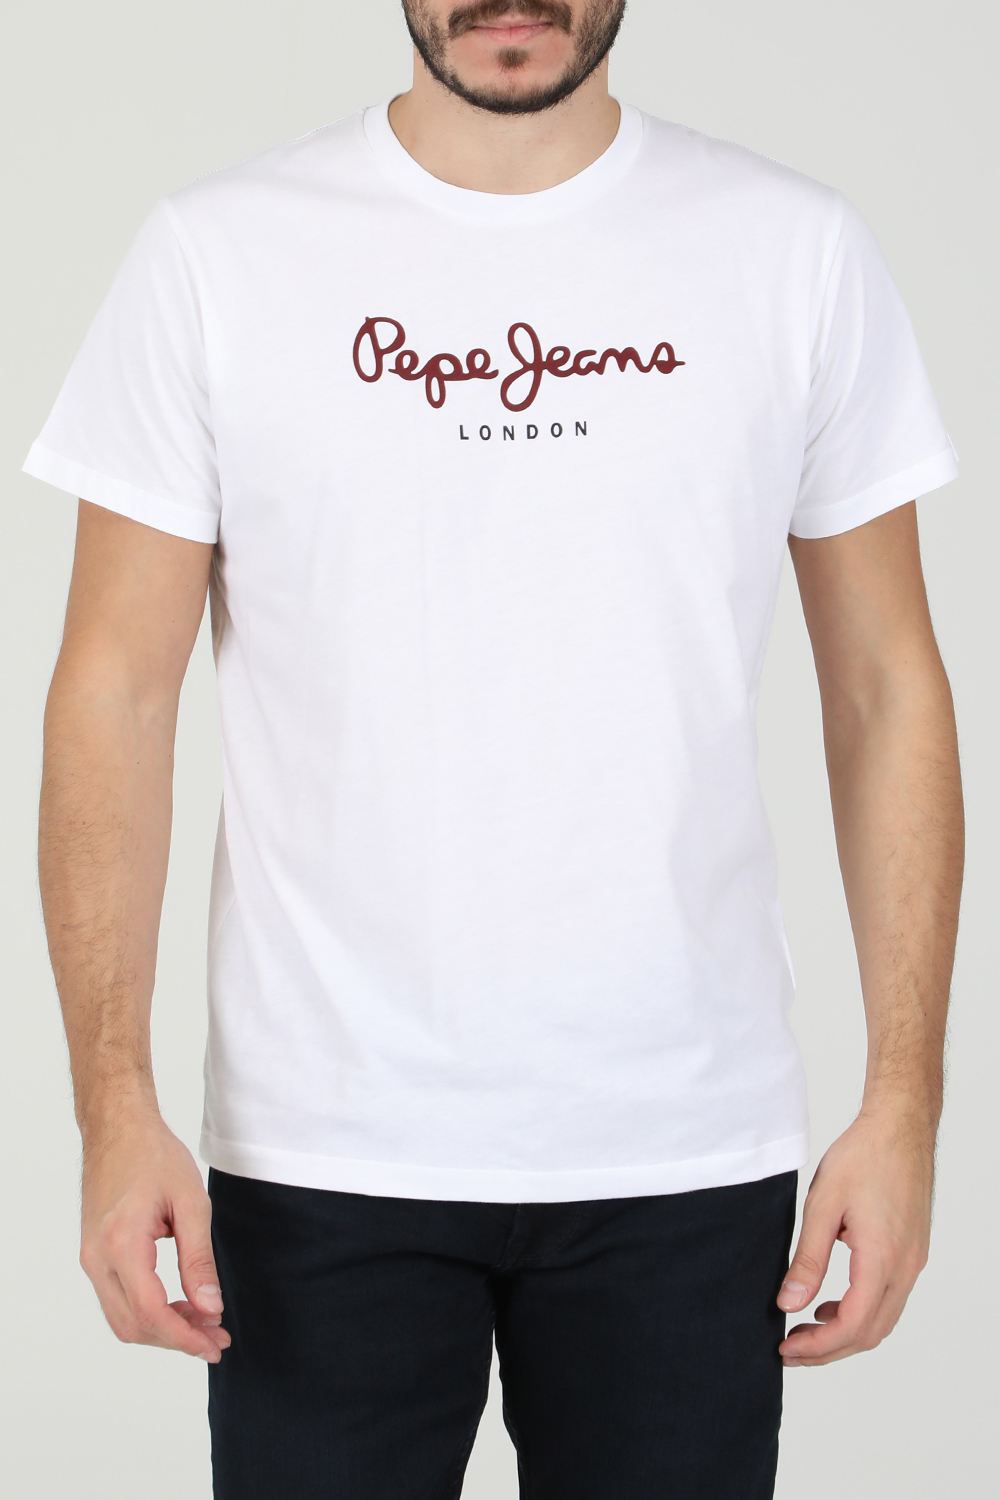 PEPE JEANS – Ανδρικη κοντομανικη μπλουζα PEPE JEANS NOS EGGO λευκη